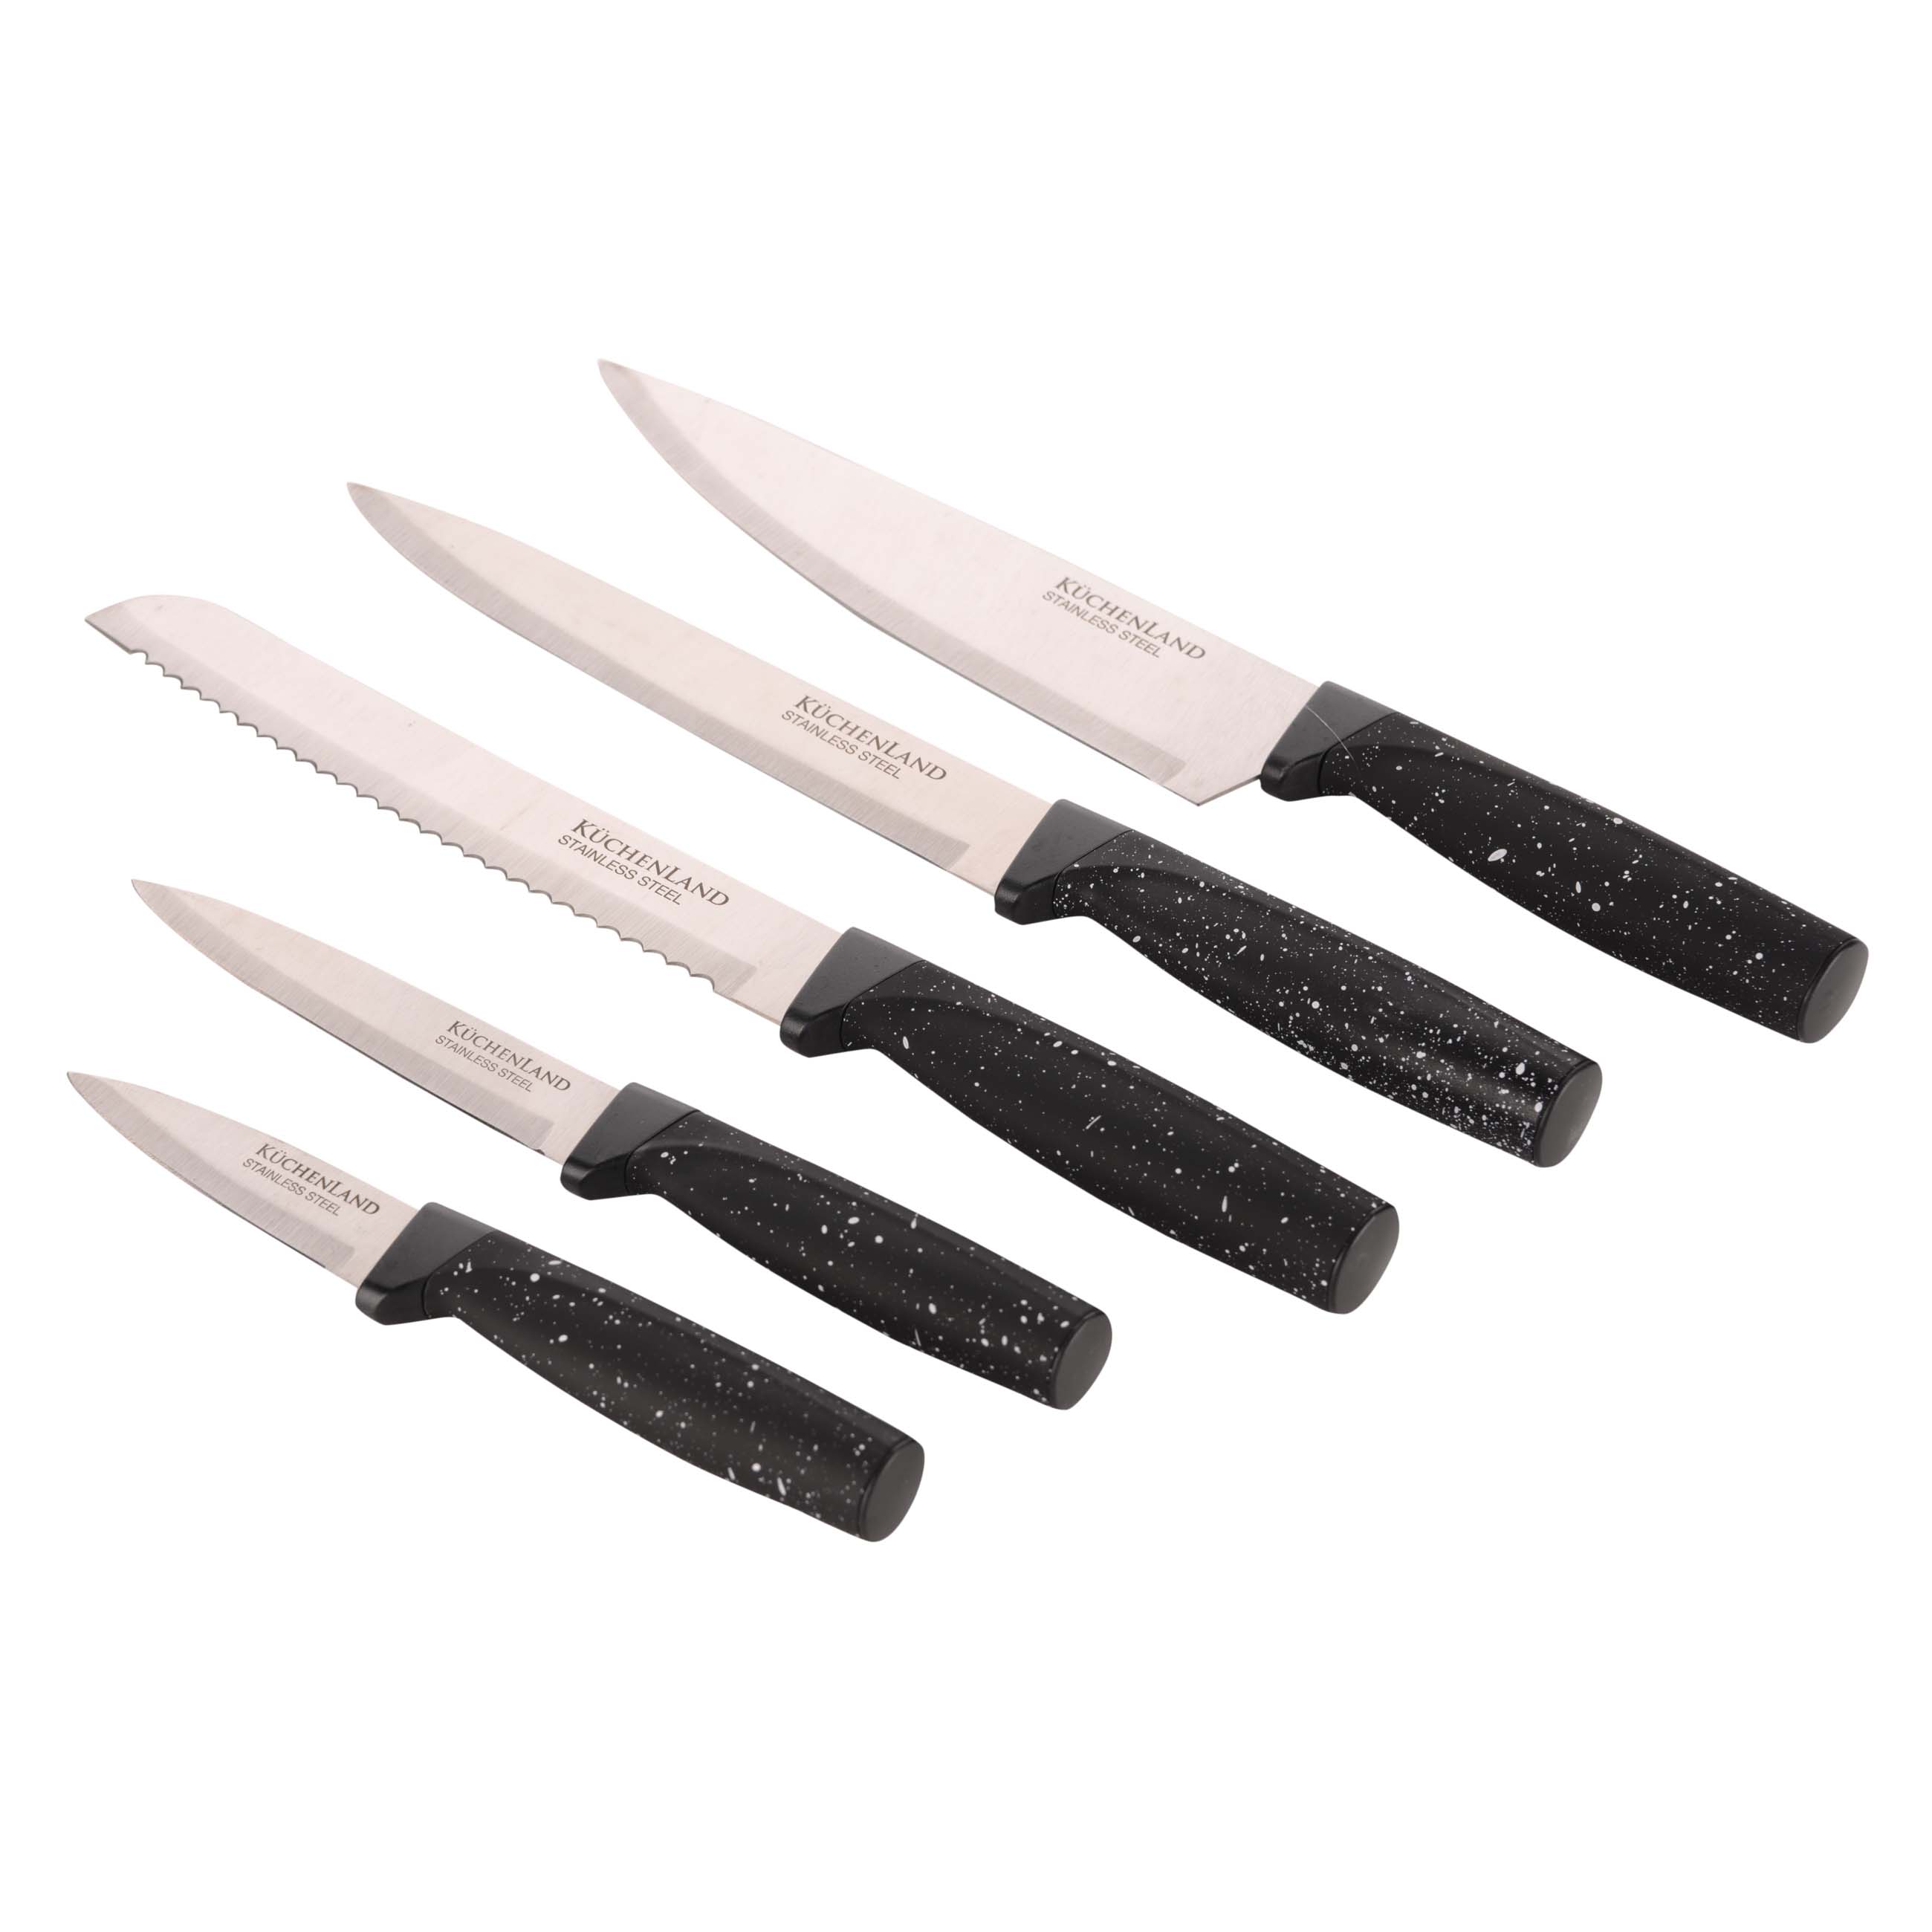 Knife set, 5 pr, in stand, steel / plastic, Black, speckled, Steel speckled изображение № 2